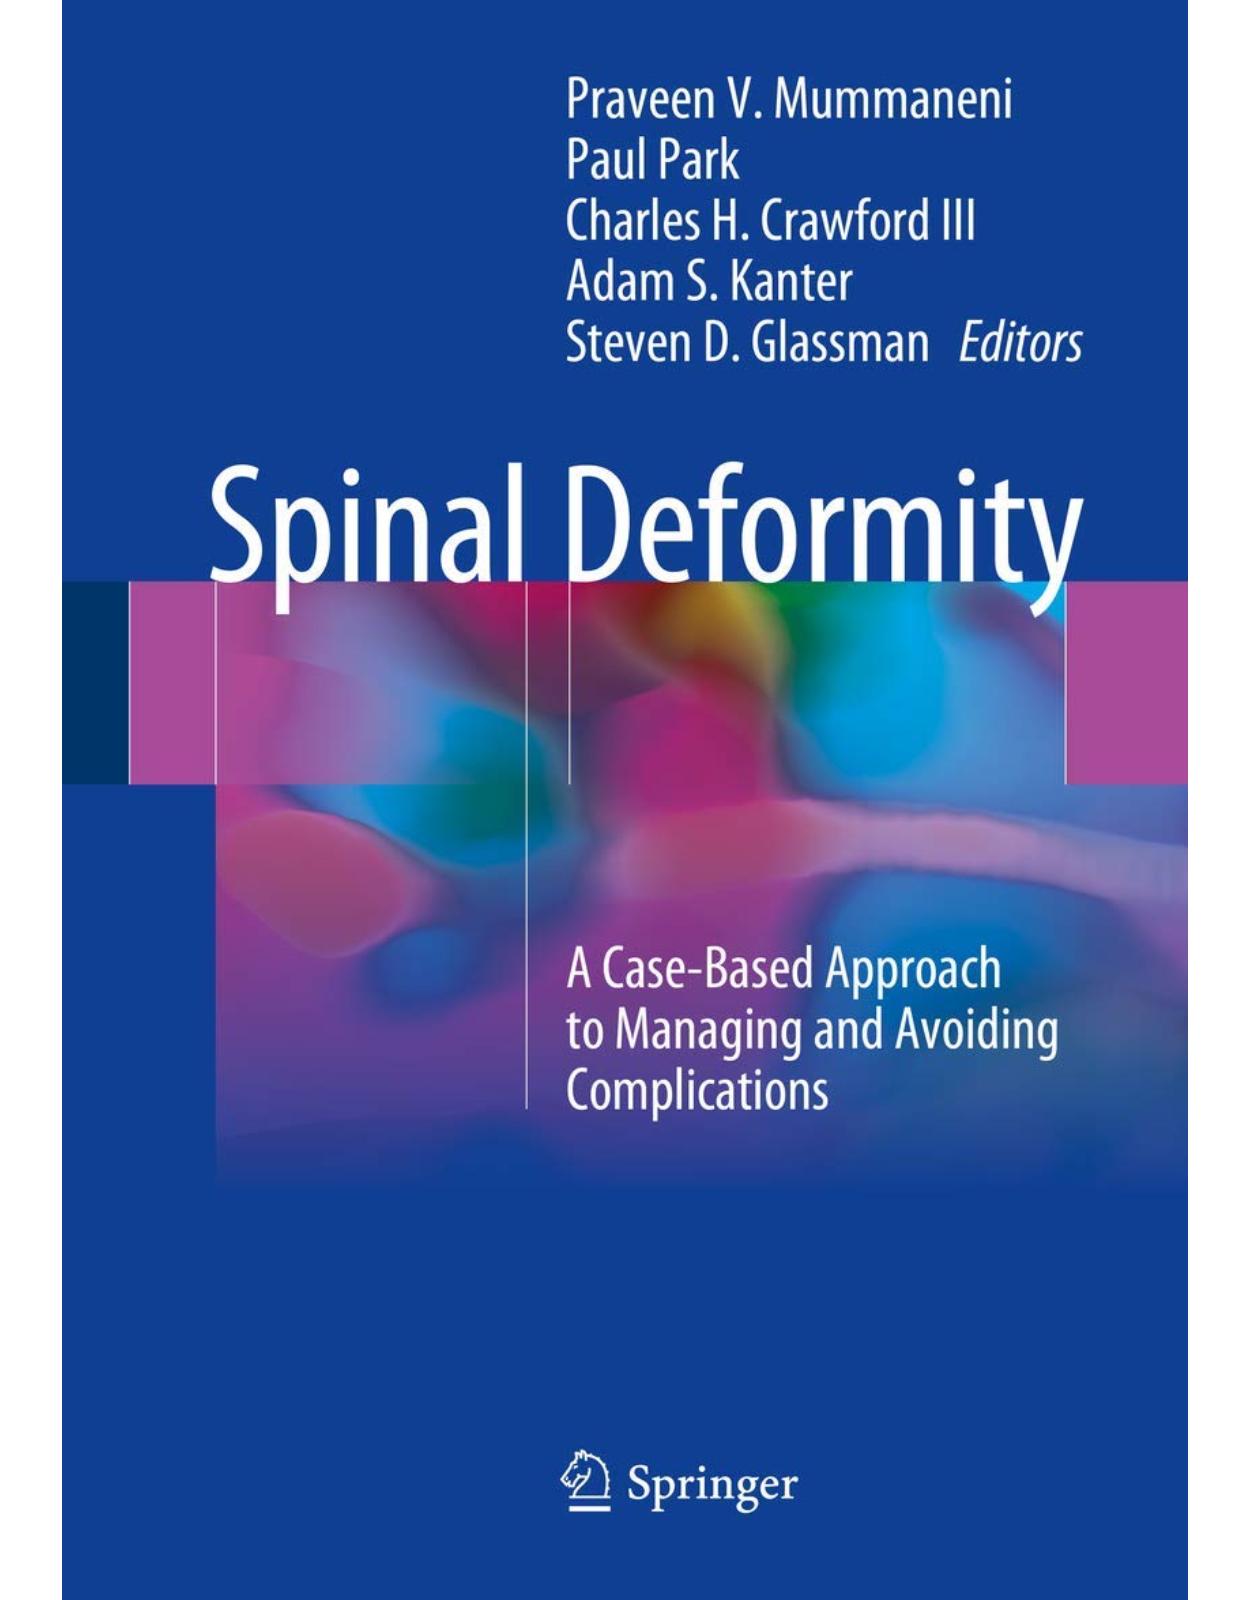 Spinal Deformity